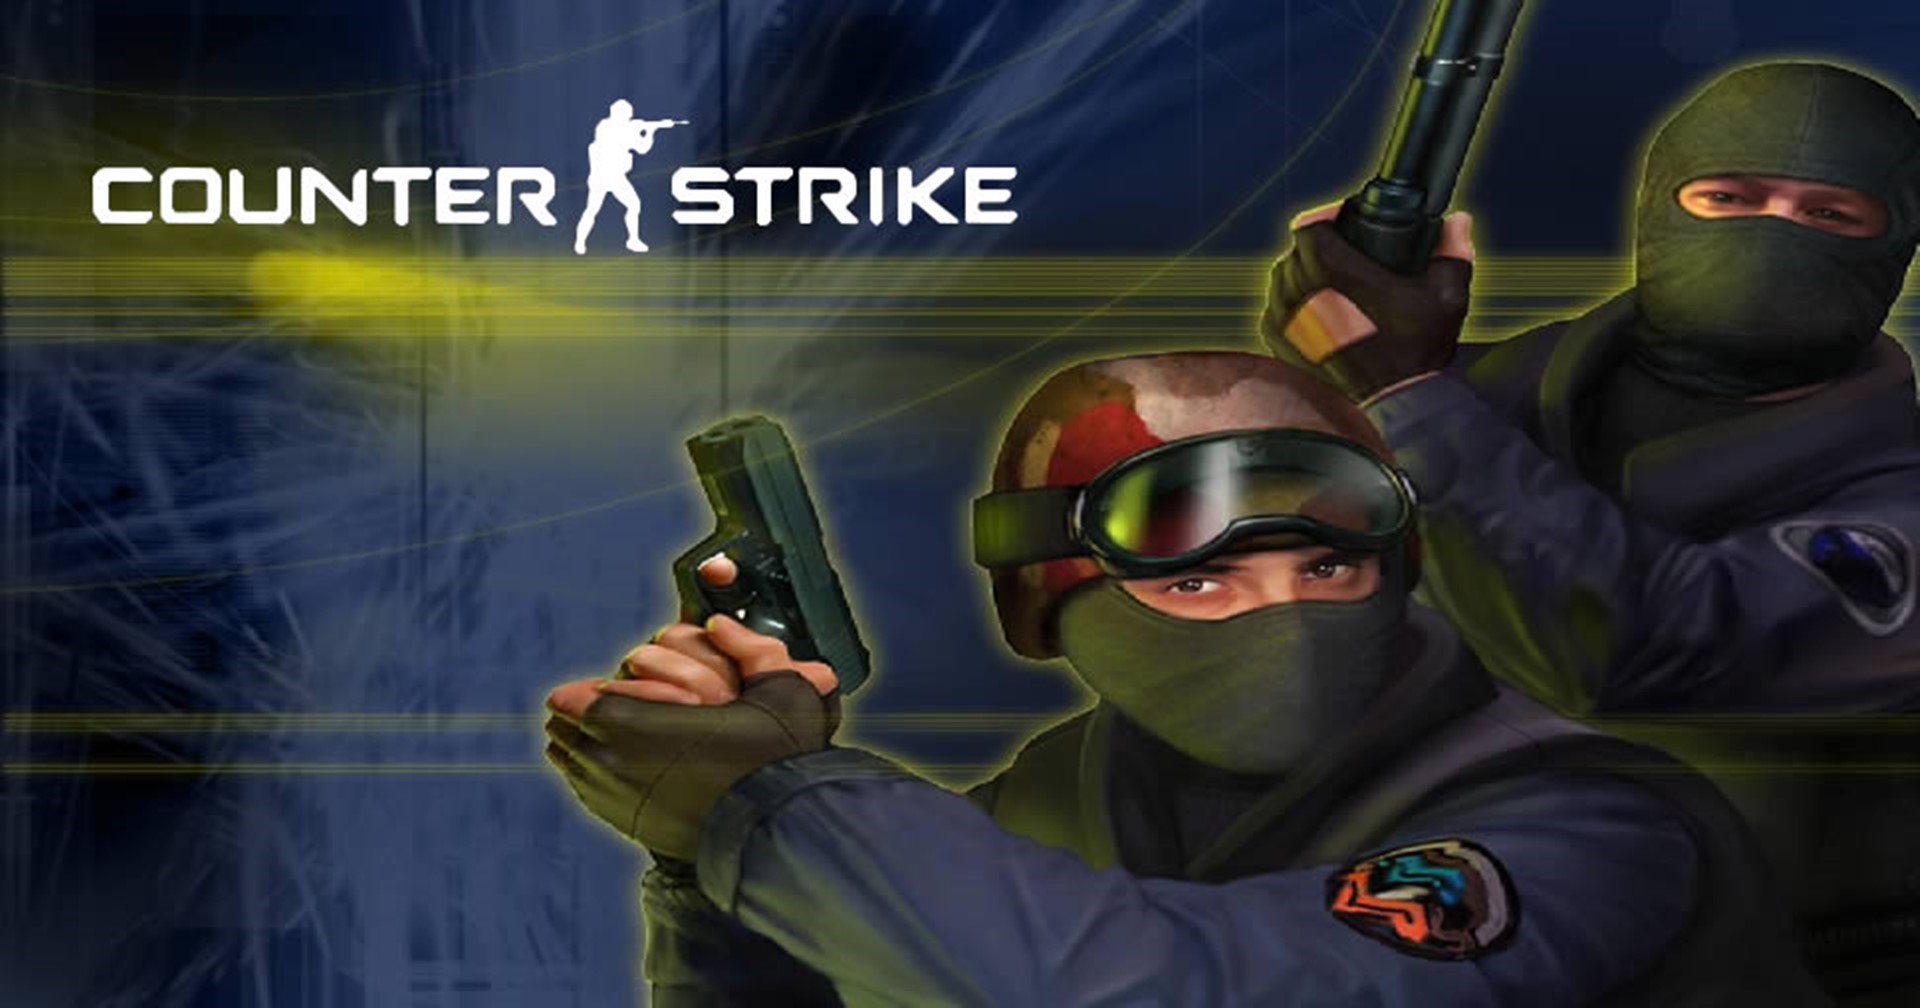 ข่าวลือ Valve เตรียมเปิดตัวเกมในตำนาน Counter-Strike 2 เร็ว ๆ นี้